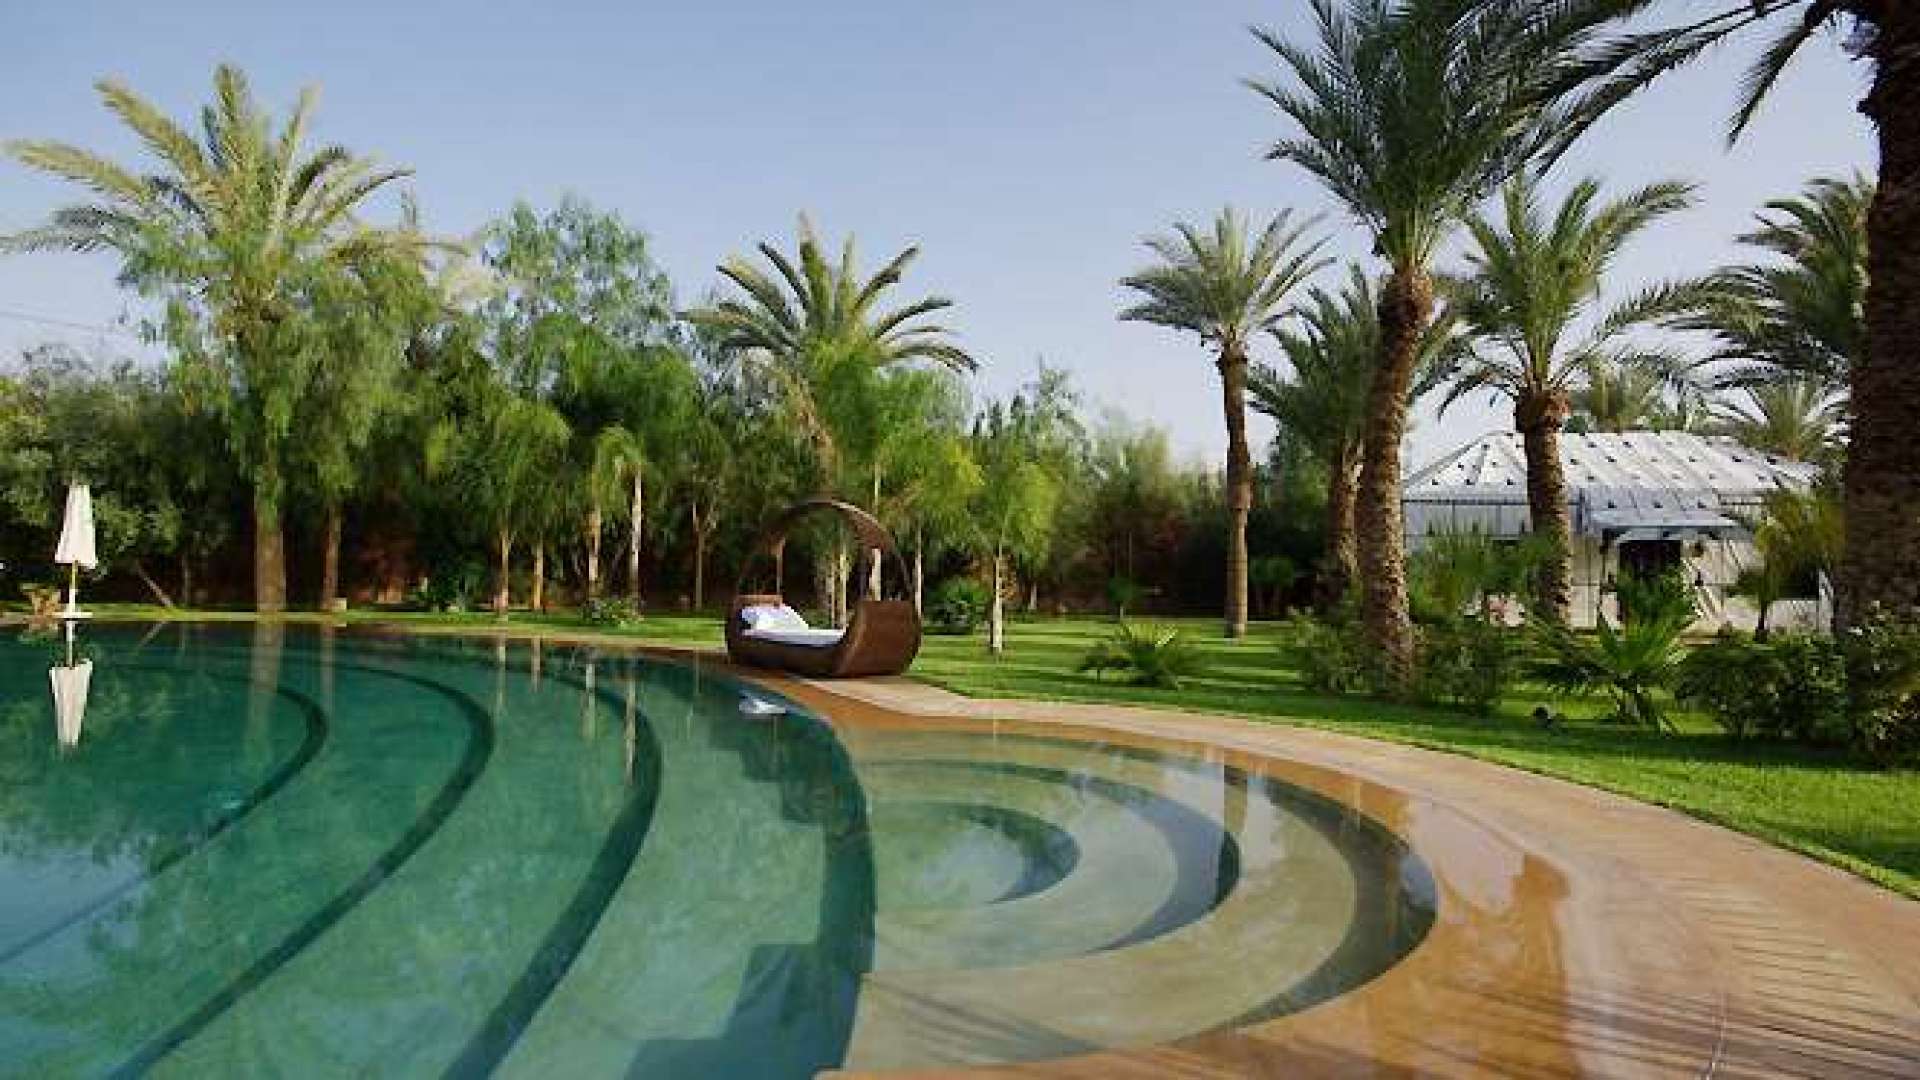 Location de vacances,Villa,Villa de luxe avec 8 lodges exceptionnelles à la Palmeraie,Marrakech,Palmeraie